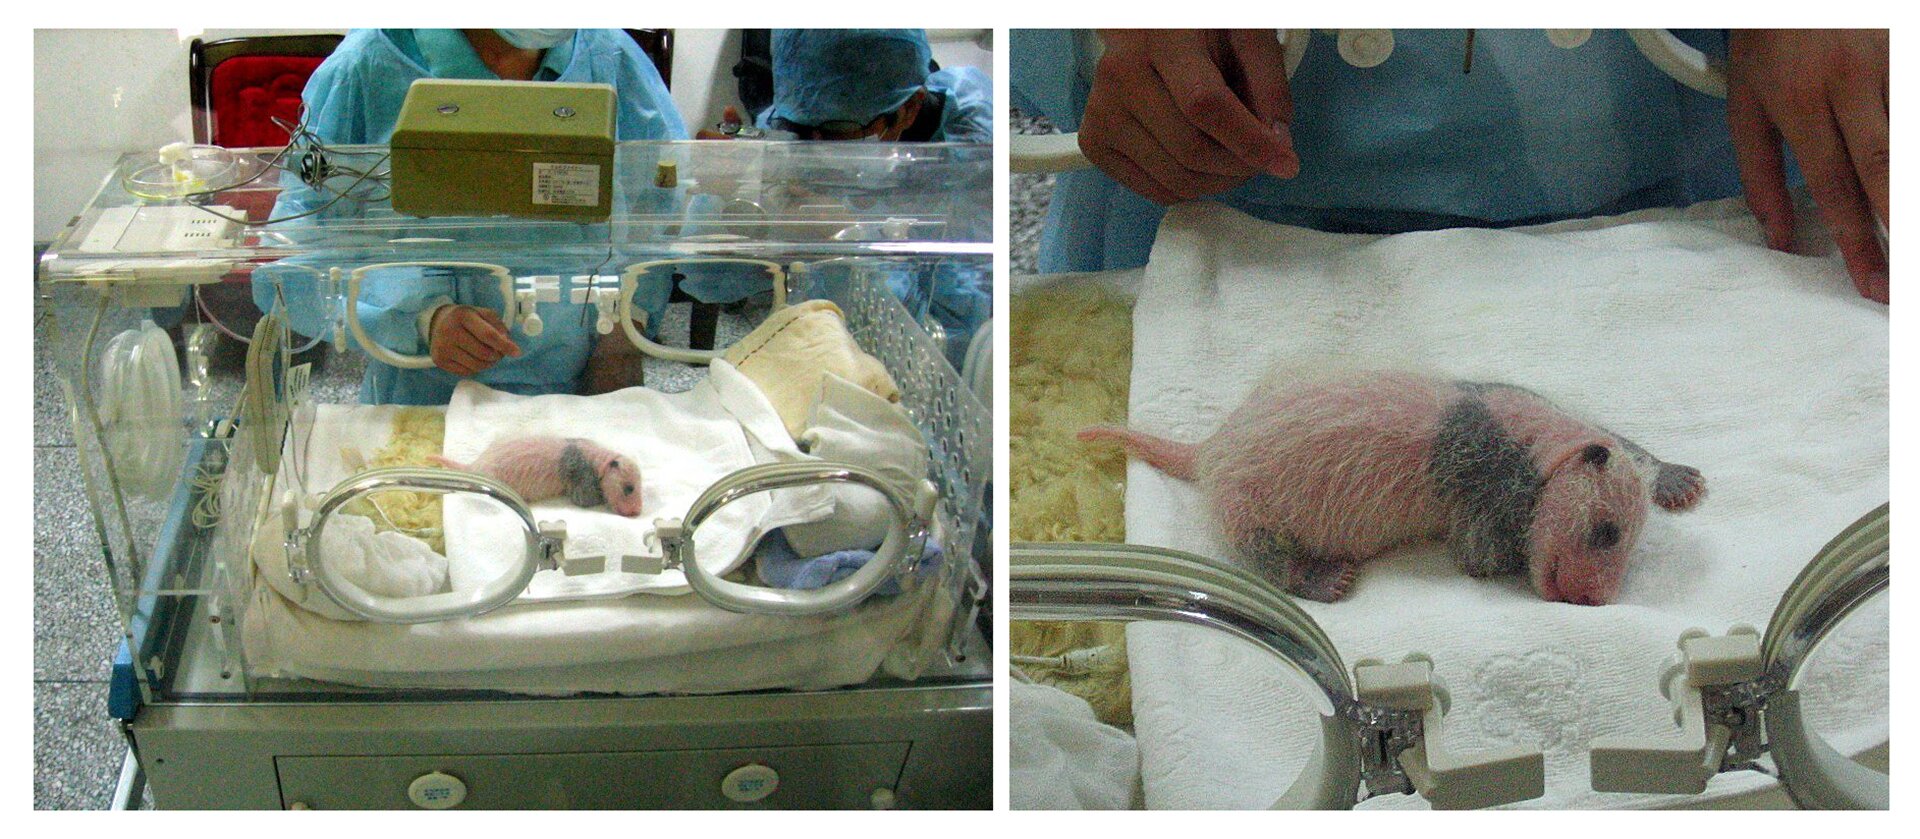 Fotografia z lewej przedstawia noworodka pandy wielkiej w szarym inkubatorze. Różowe z szarymi plamami zwierzątko leży na białym podkładzie. Z tyłu stoją ludzie w błękitnych fartuchach. Fotografia z prawej to zbliżenie małej pandy, żeby ukazać pokrycie jej ciała białymi, rzadkimi włosami.